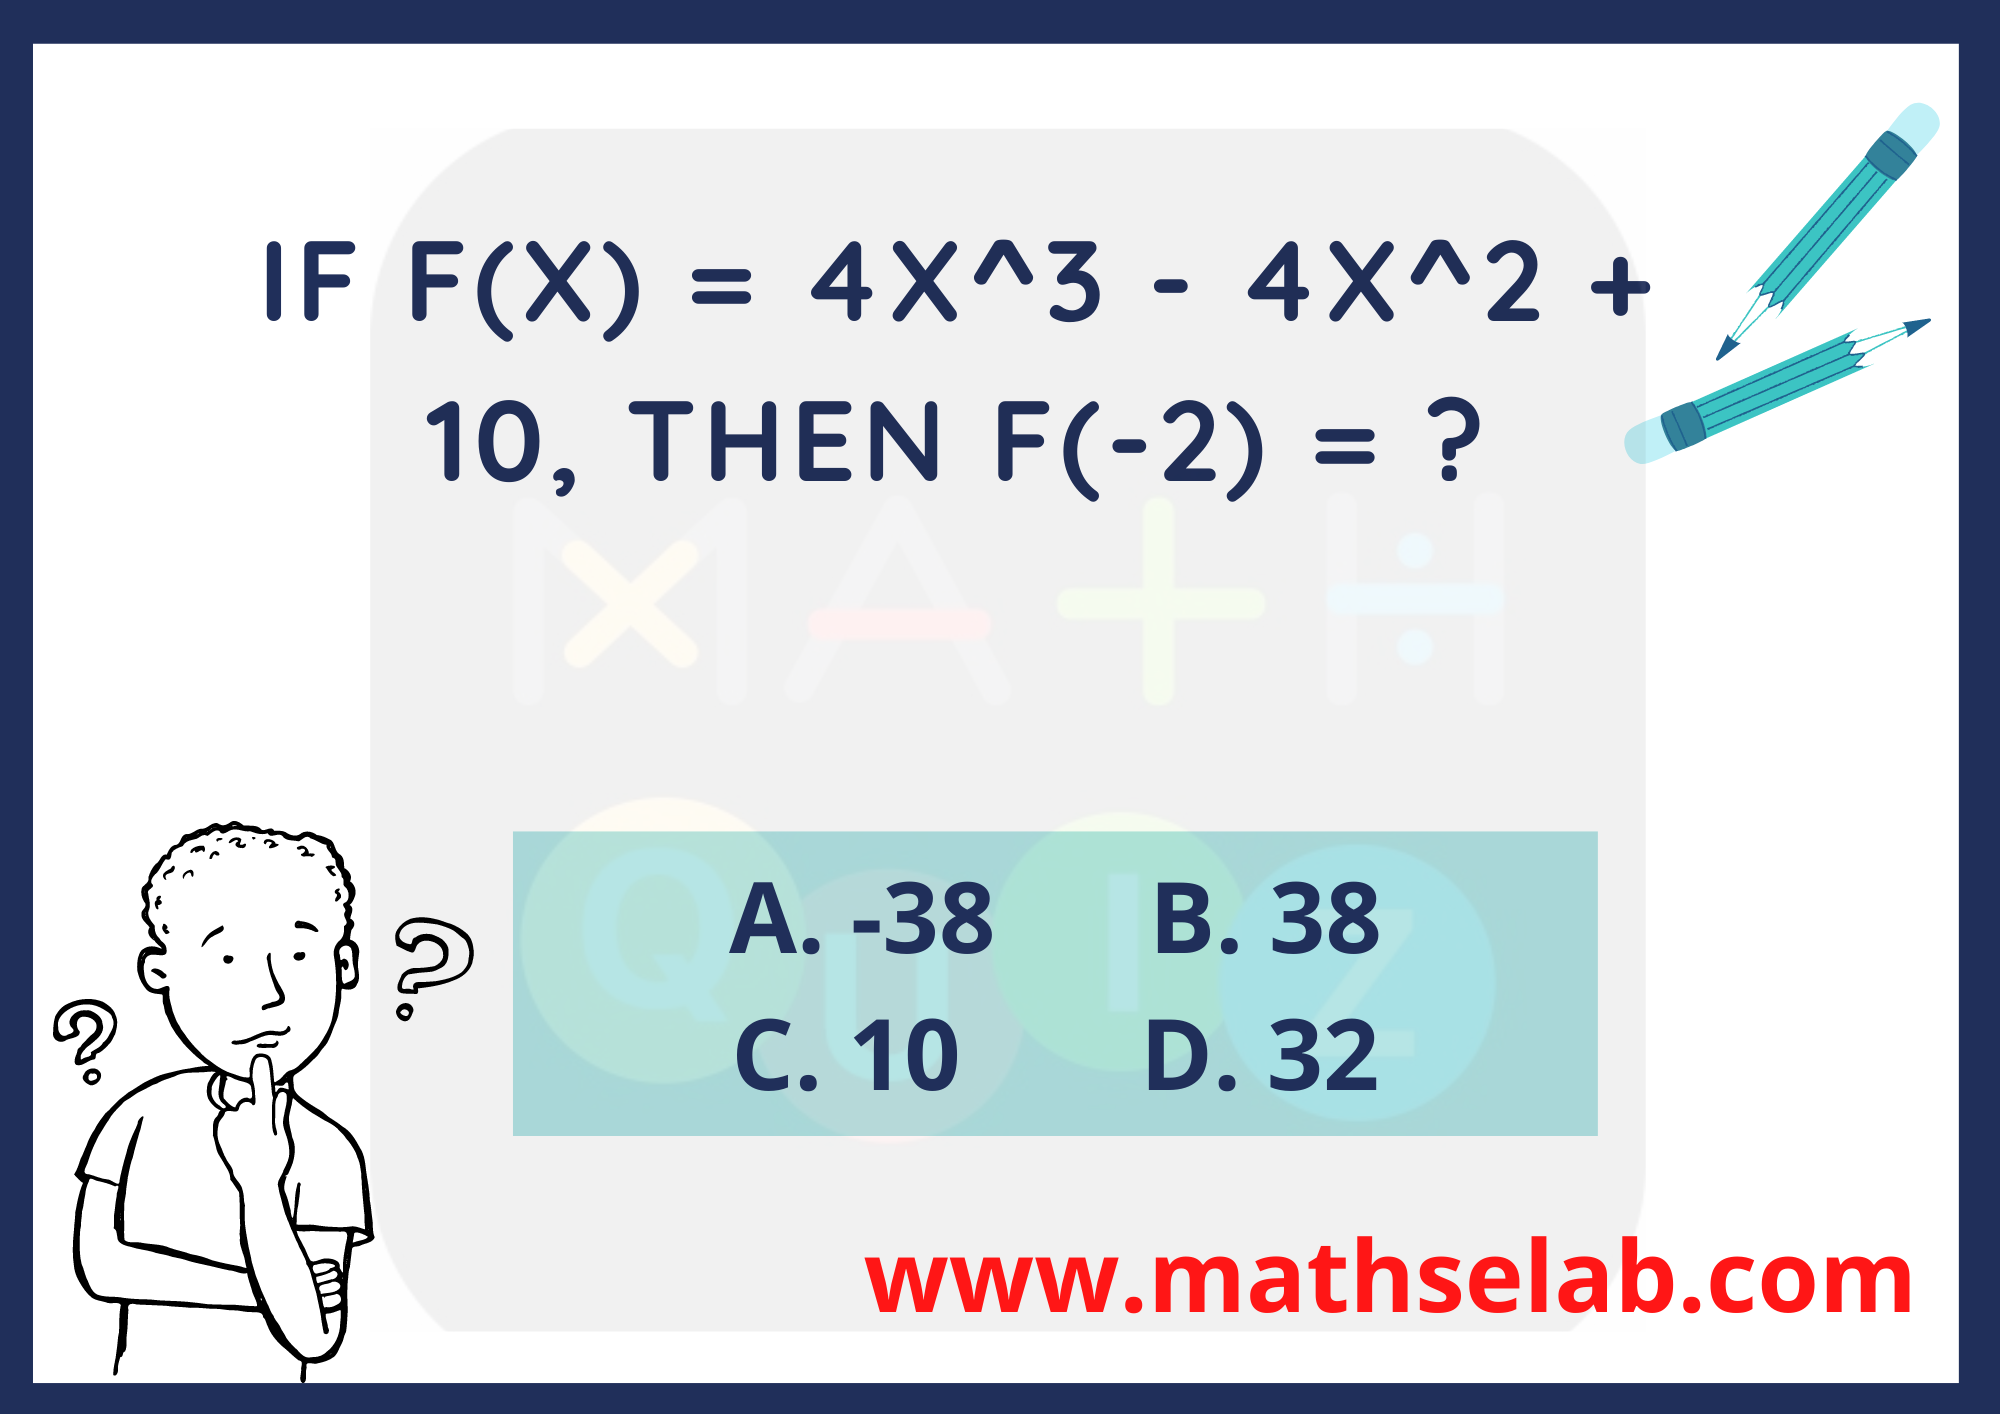 If f(x) = 4x^3 - 4x^2 + 10, then f(-2) = ?